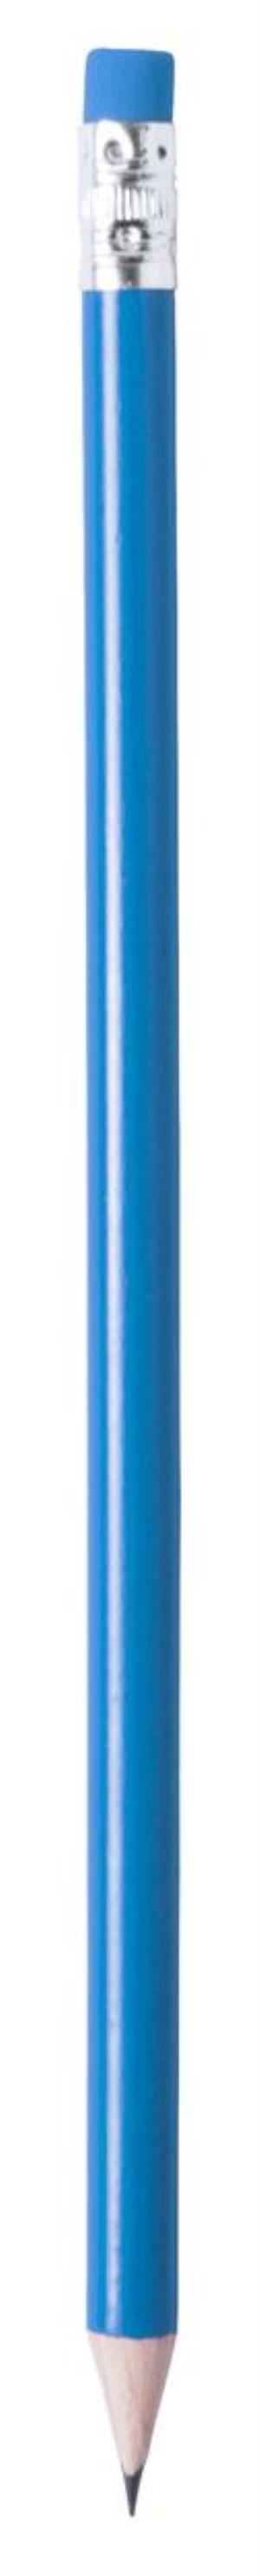 Drevená ceruzka Melart, modrá